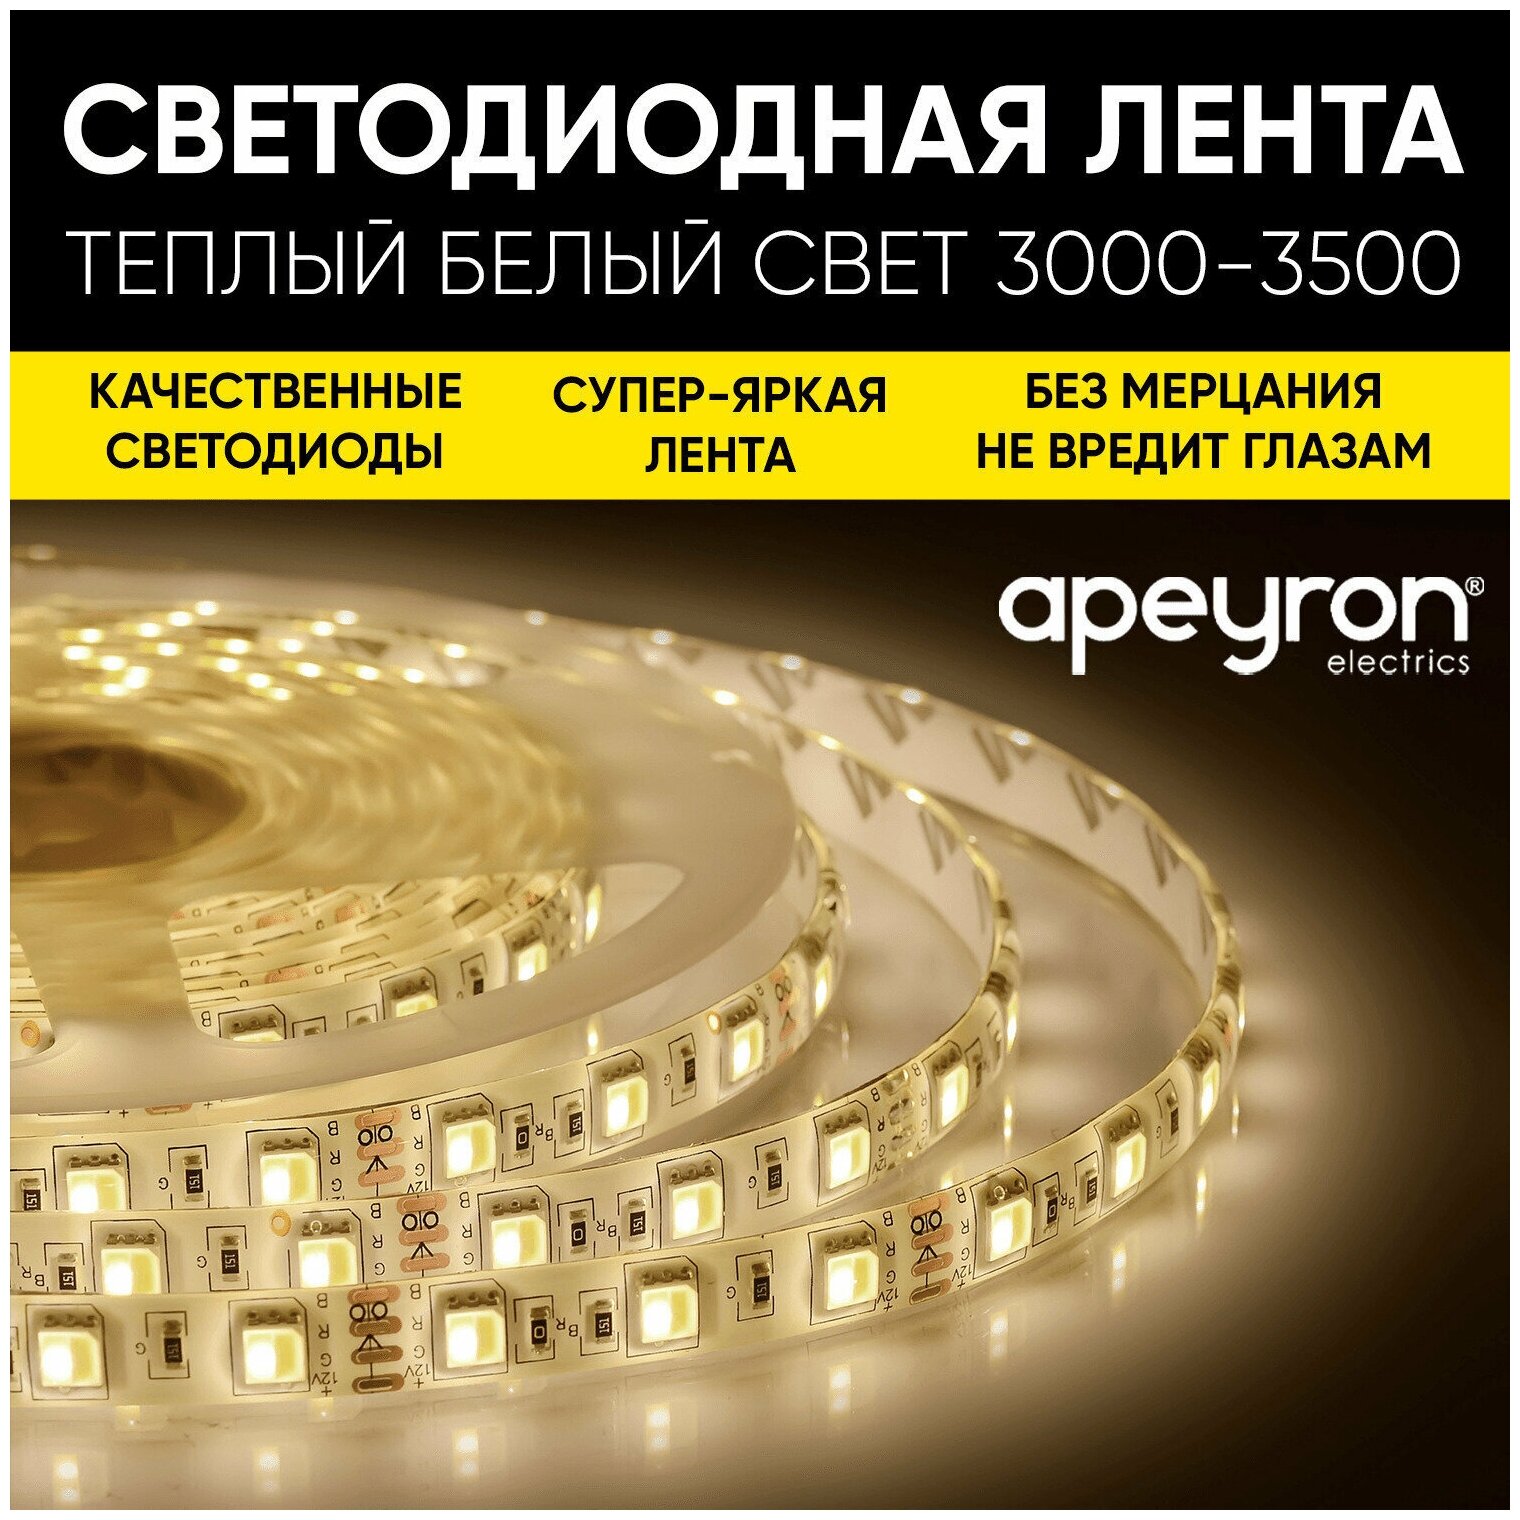 Светодиодная лента Apeyron 00-437 12В, 7,2Вт/м, smd5050, 30д/м, IP20, 600Лм/м, 5м, теплый белый